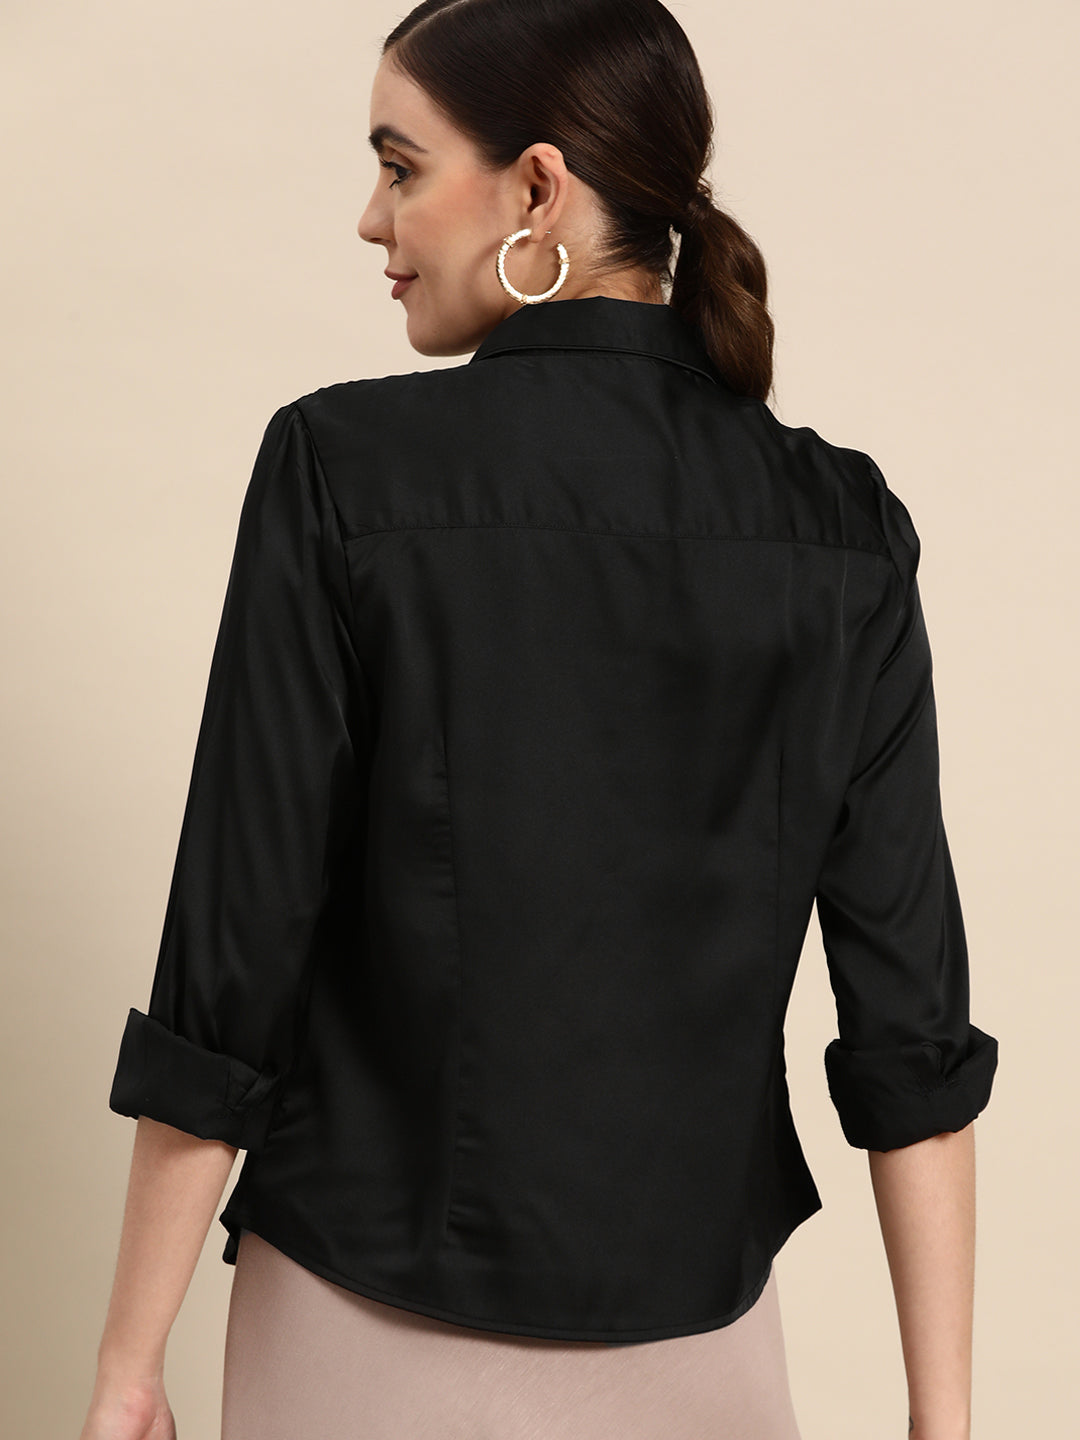 DENNISON Women Black Smart Opaque Casual Shirt